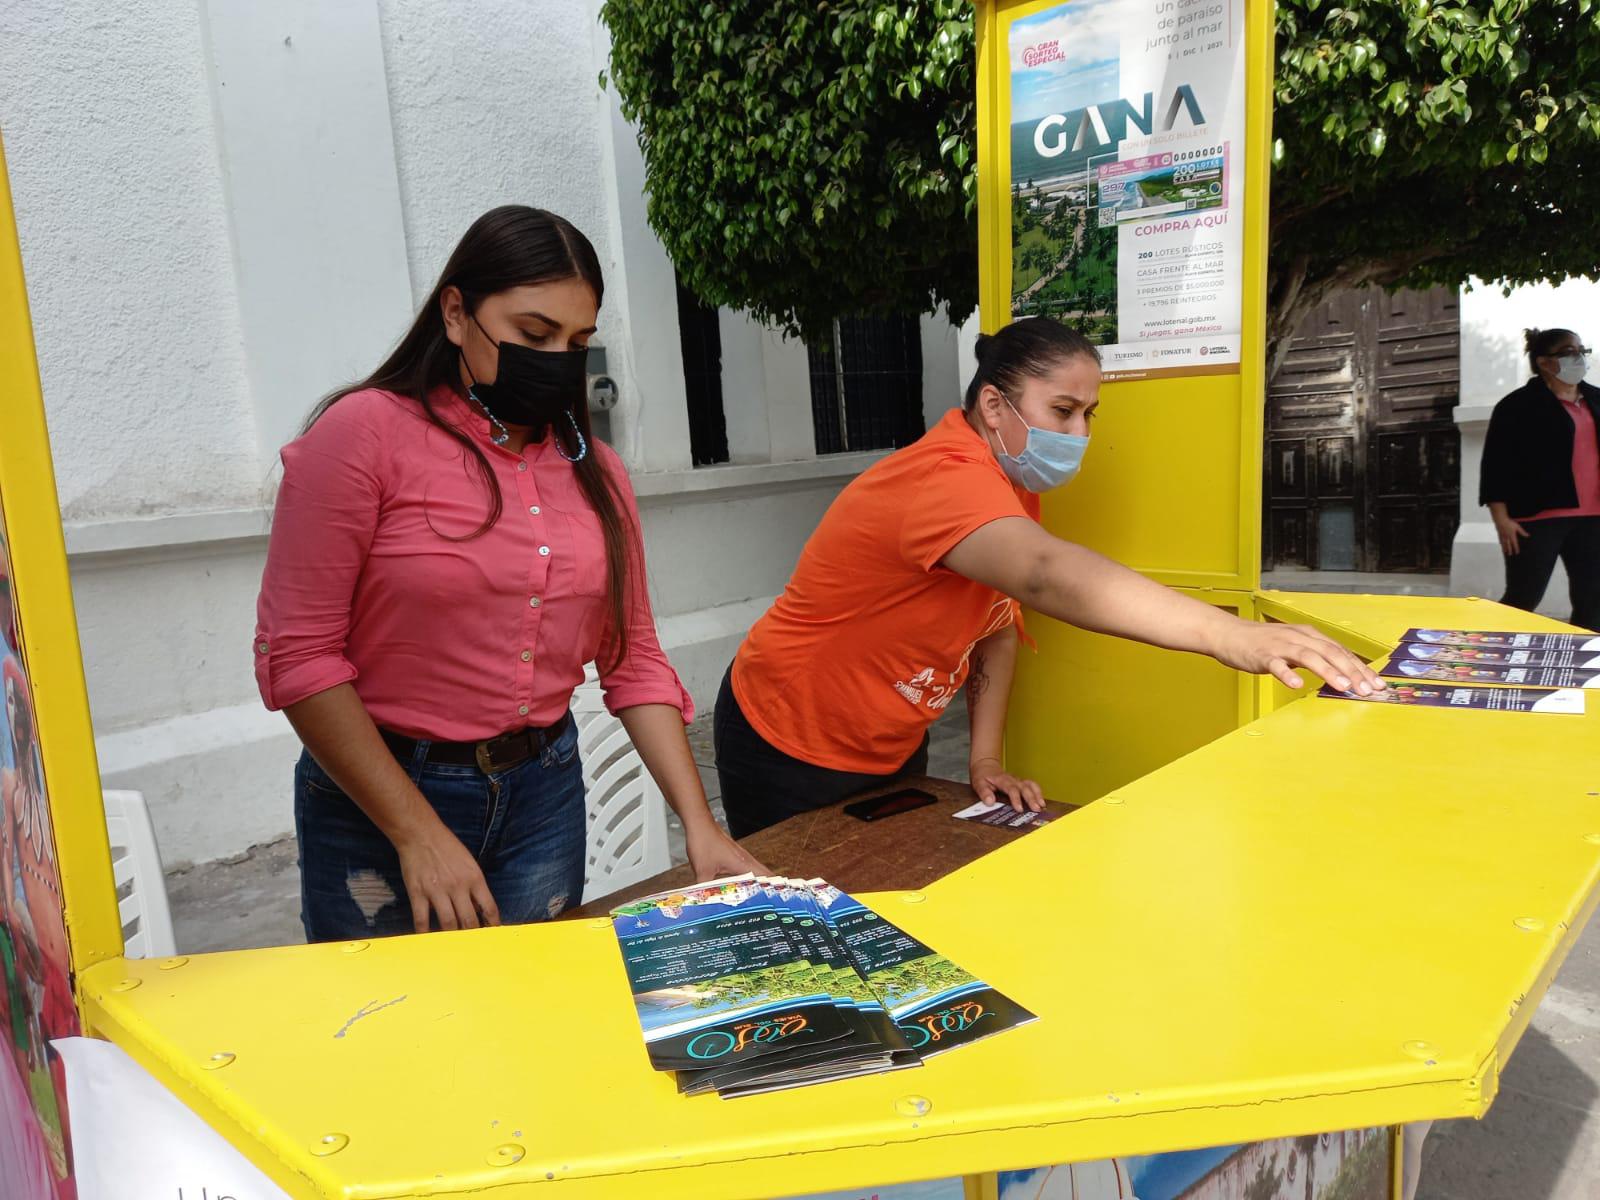 $!Ya se venden cachitos para la rifa de lotes de Playa Espíritu en módulo de turismo de Escuinapa